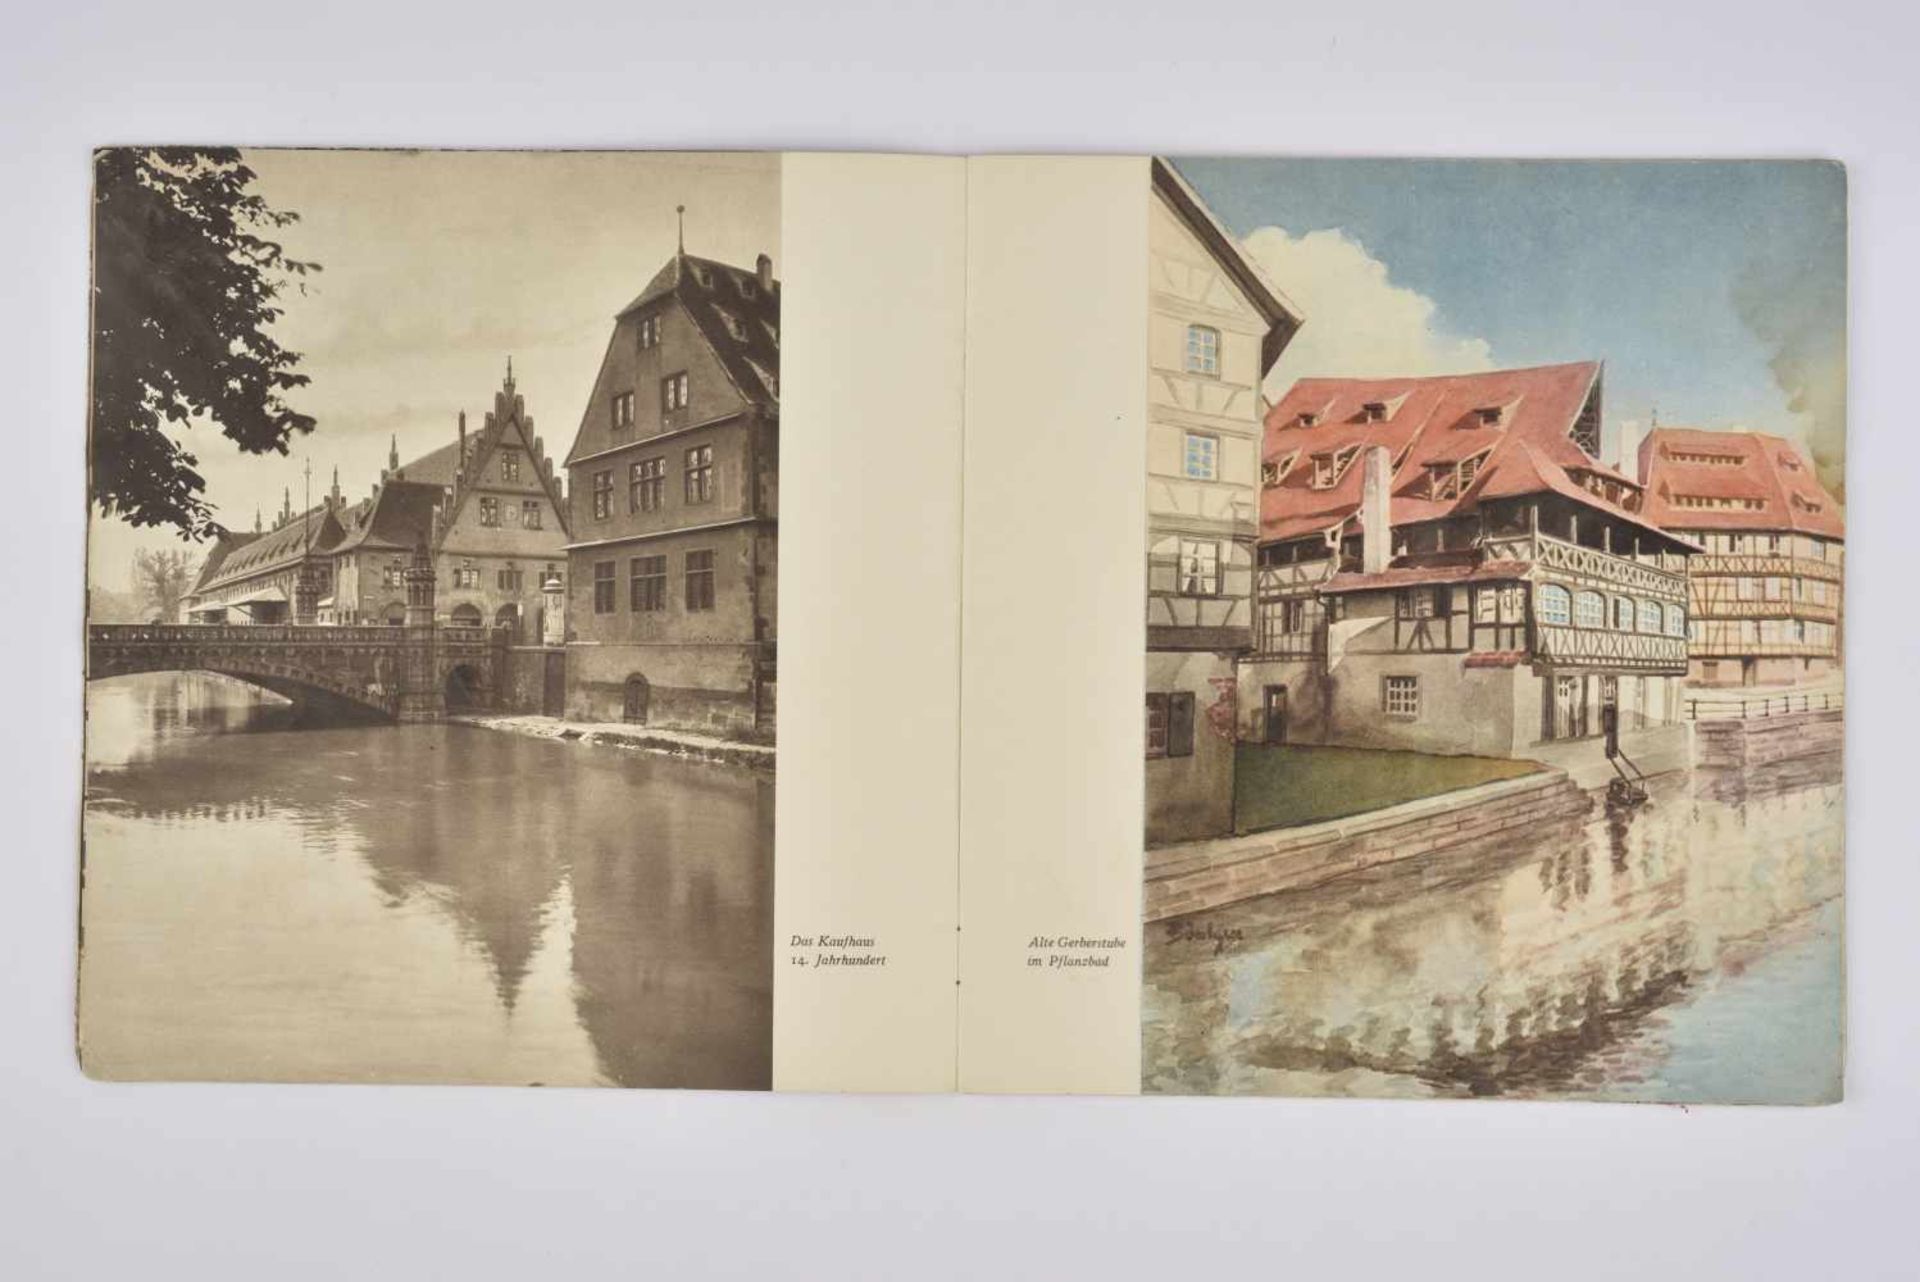 Publications sur la ville de Strasbourg occupée comprenant 2 livret de corrélation entre les - Bild 2 aus 3